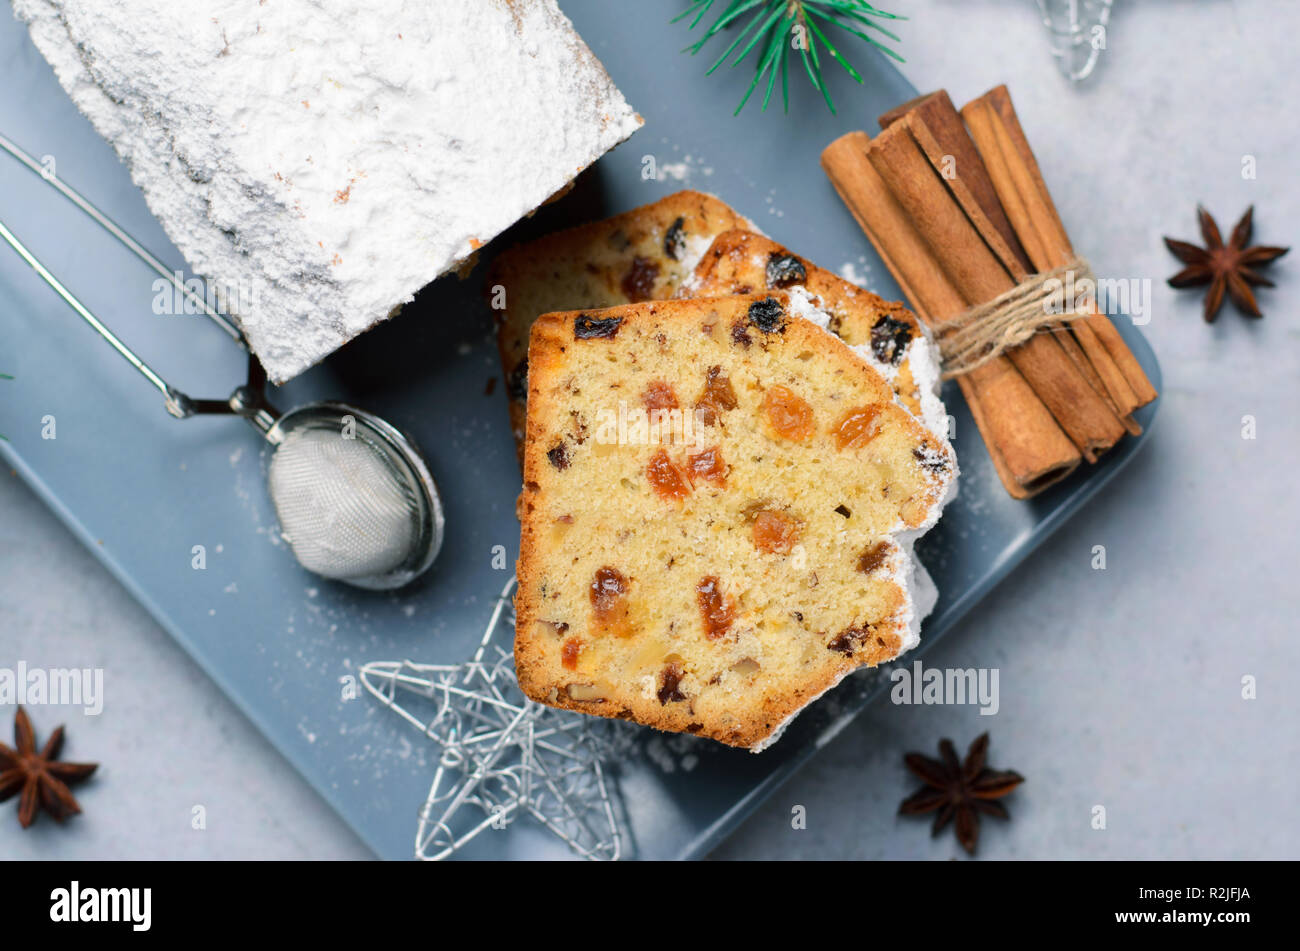 Obst und Mutter Brot Kuchen mit Puderzucker bestäubt, Weihnachten und Winter Urlaub gönnen, hausgemachte Kuchen mit Rosinen auf grauem Hintergrund Stockfoto